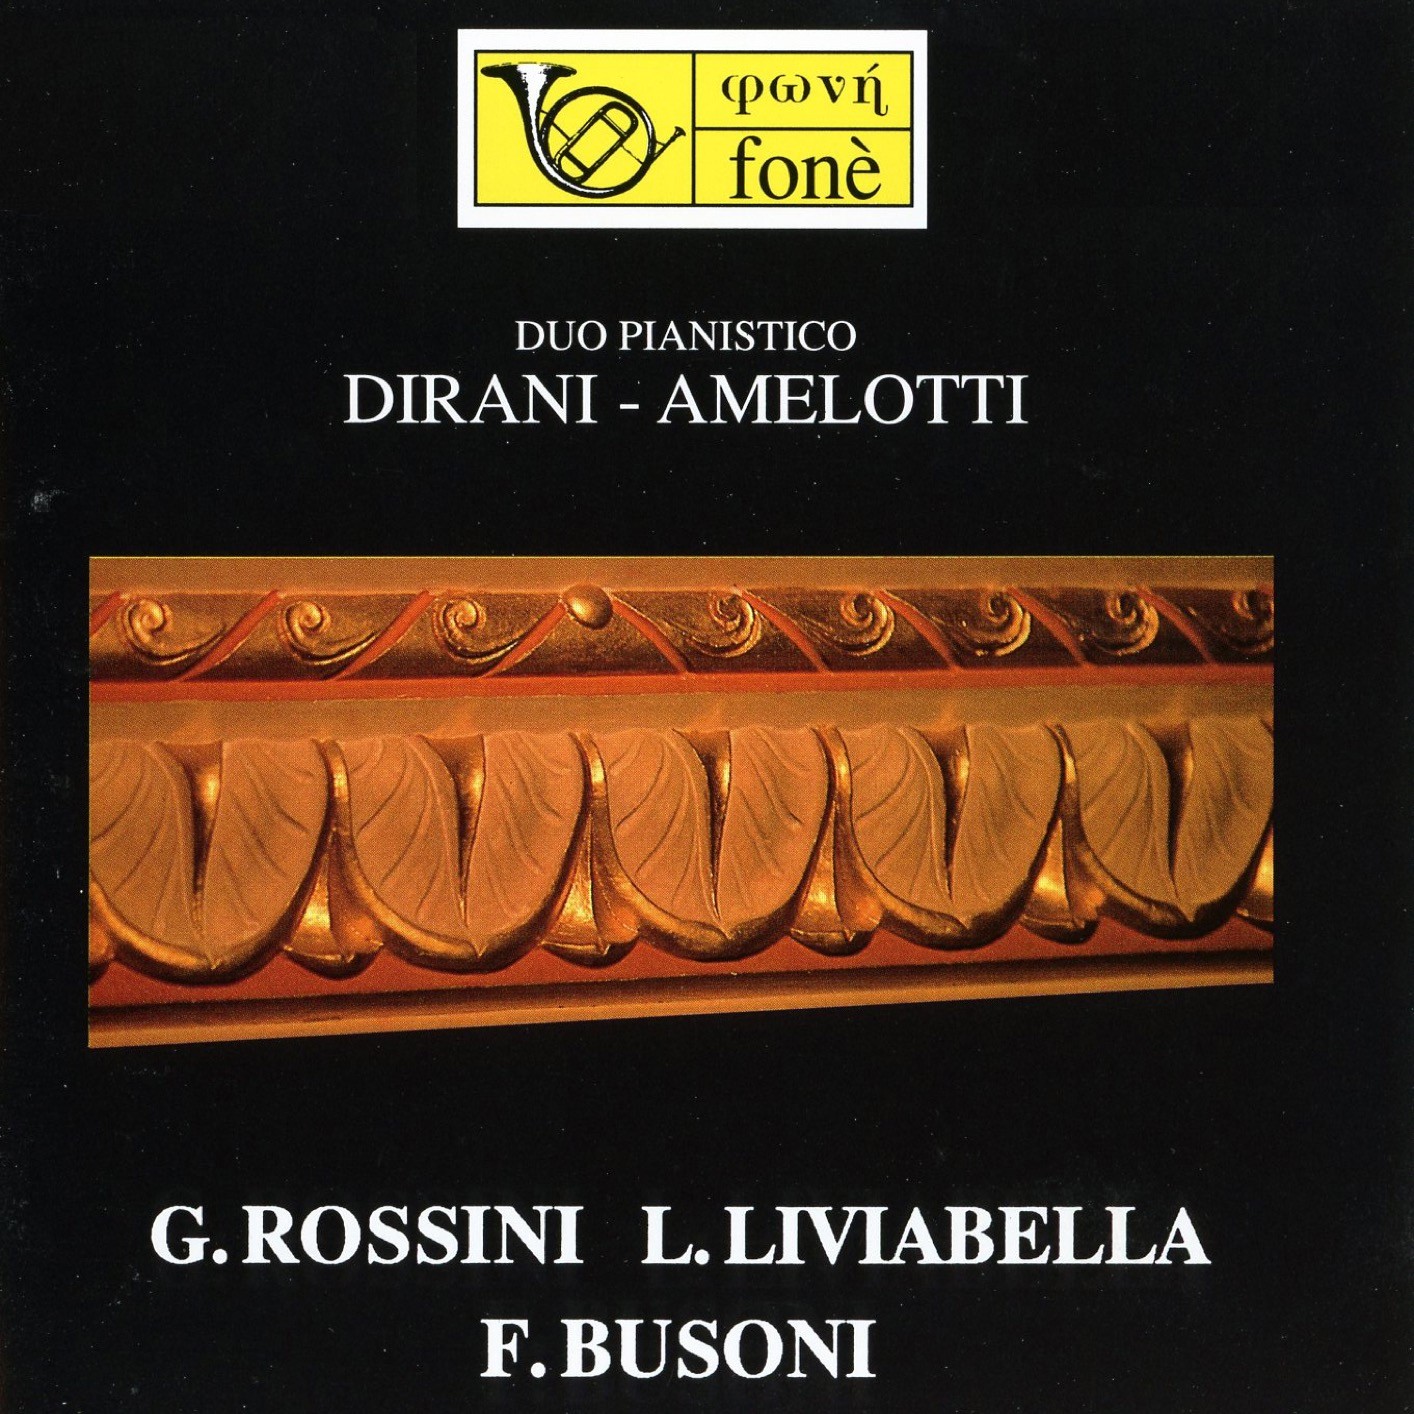 Paolo Dirani, Ferruccio Amelotti - Duo pianistico: Dirani Amelotti -G. Rossini, L. Liviabella, F. Busoni (Remastered) (1999/2023) [FLAC 24bit/48kHz] Download